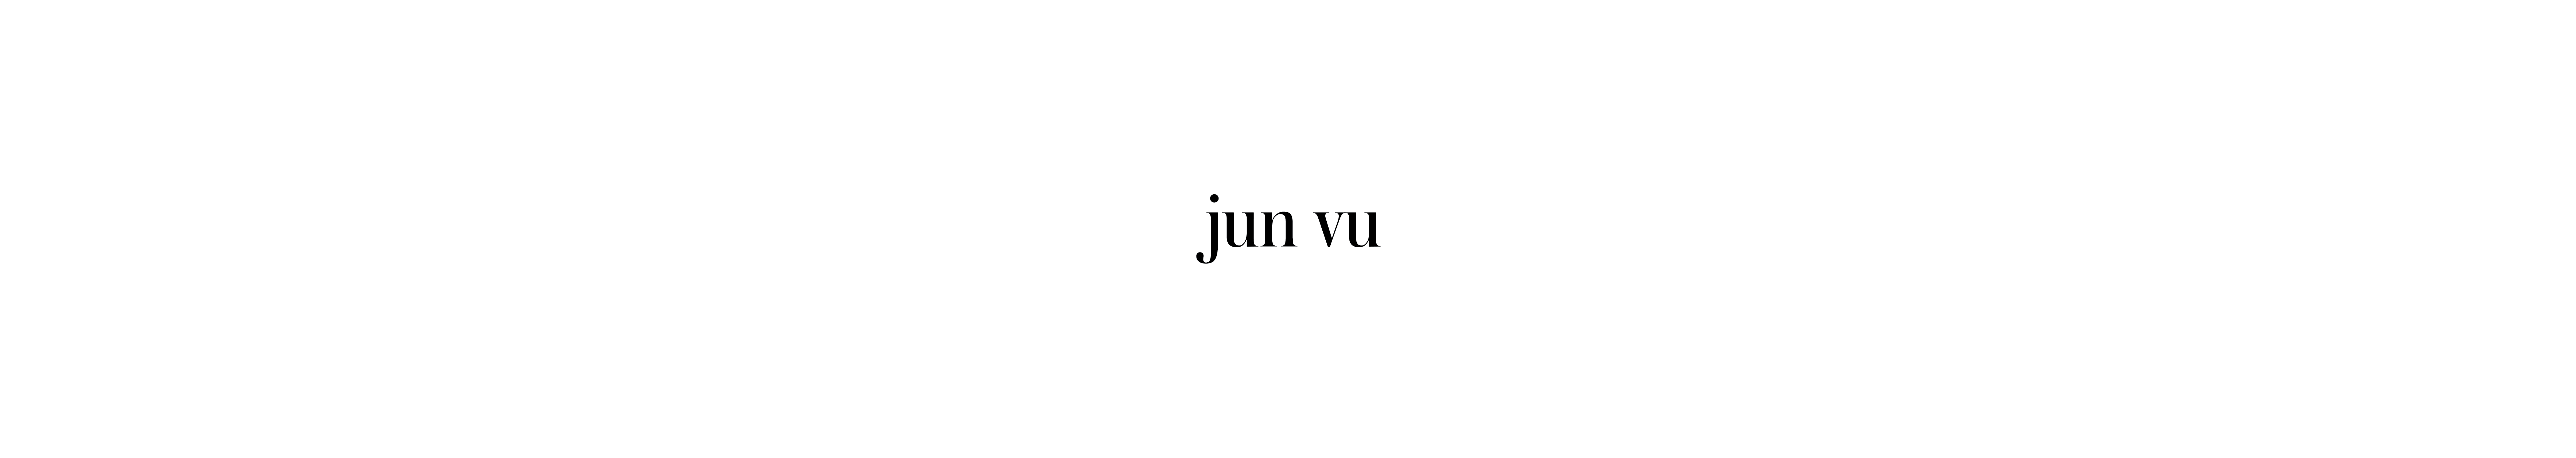 Jun Vu's profile banner